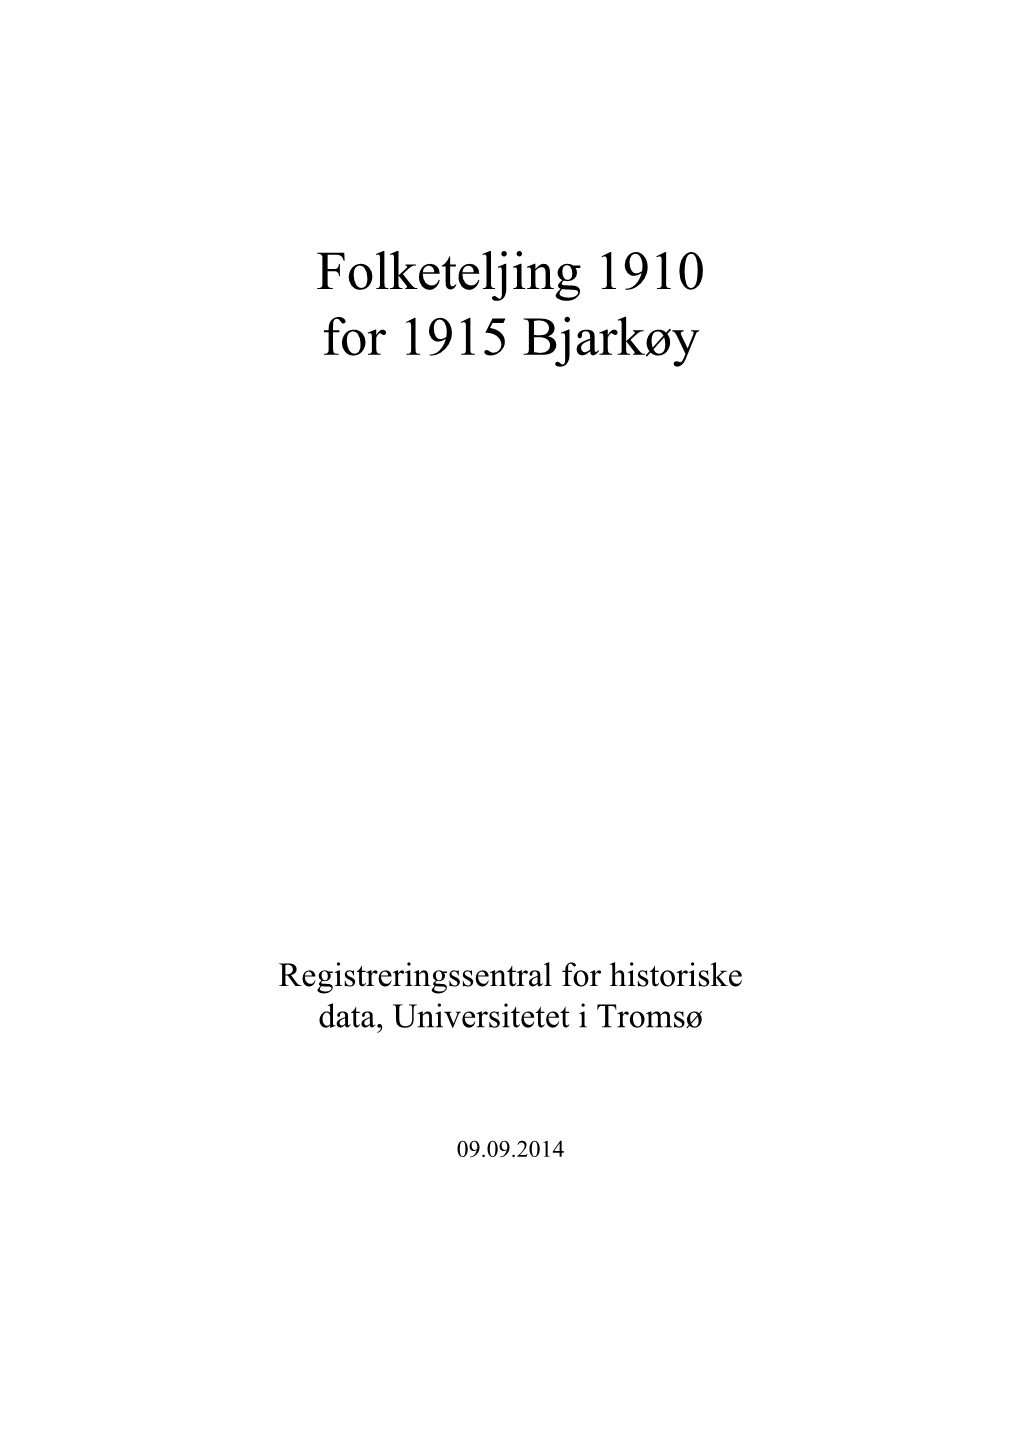 Folketeljing 1910 for 1915 Bjarkøy